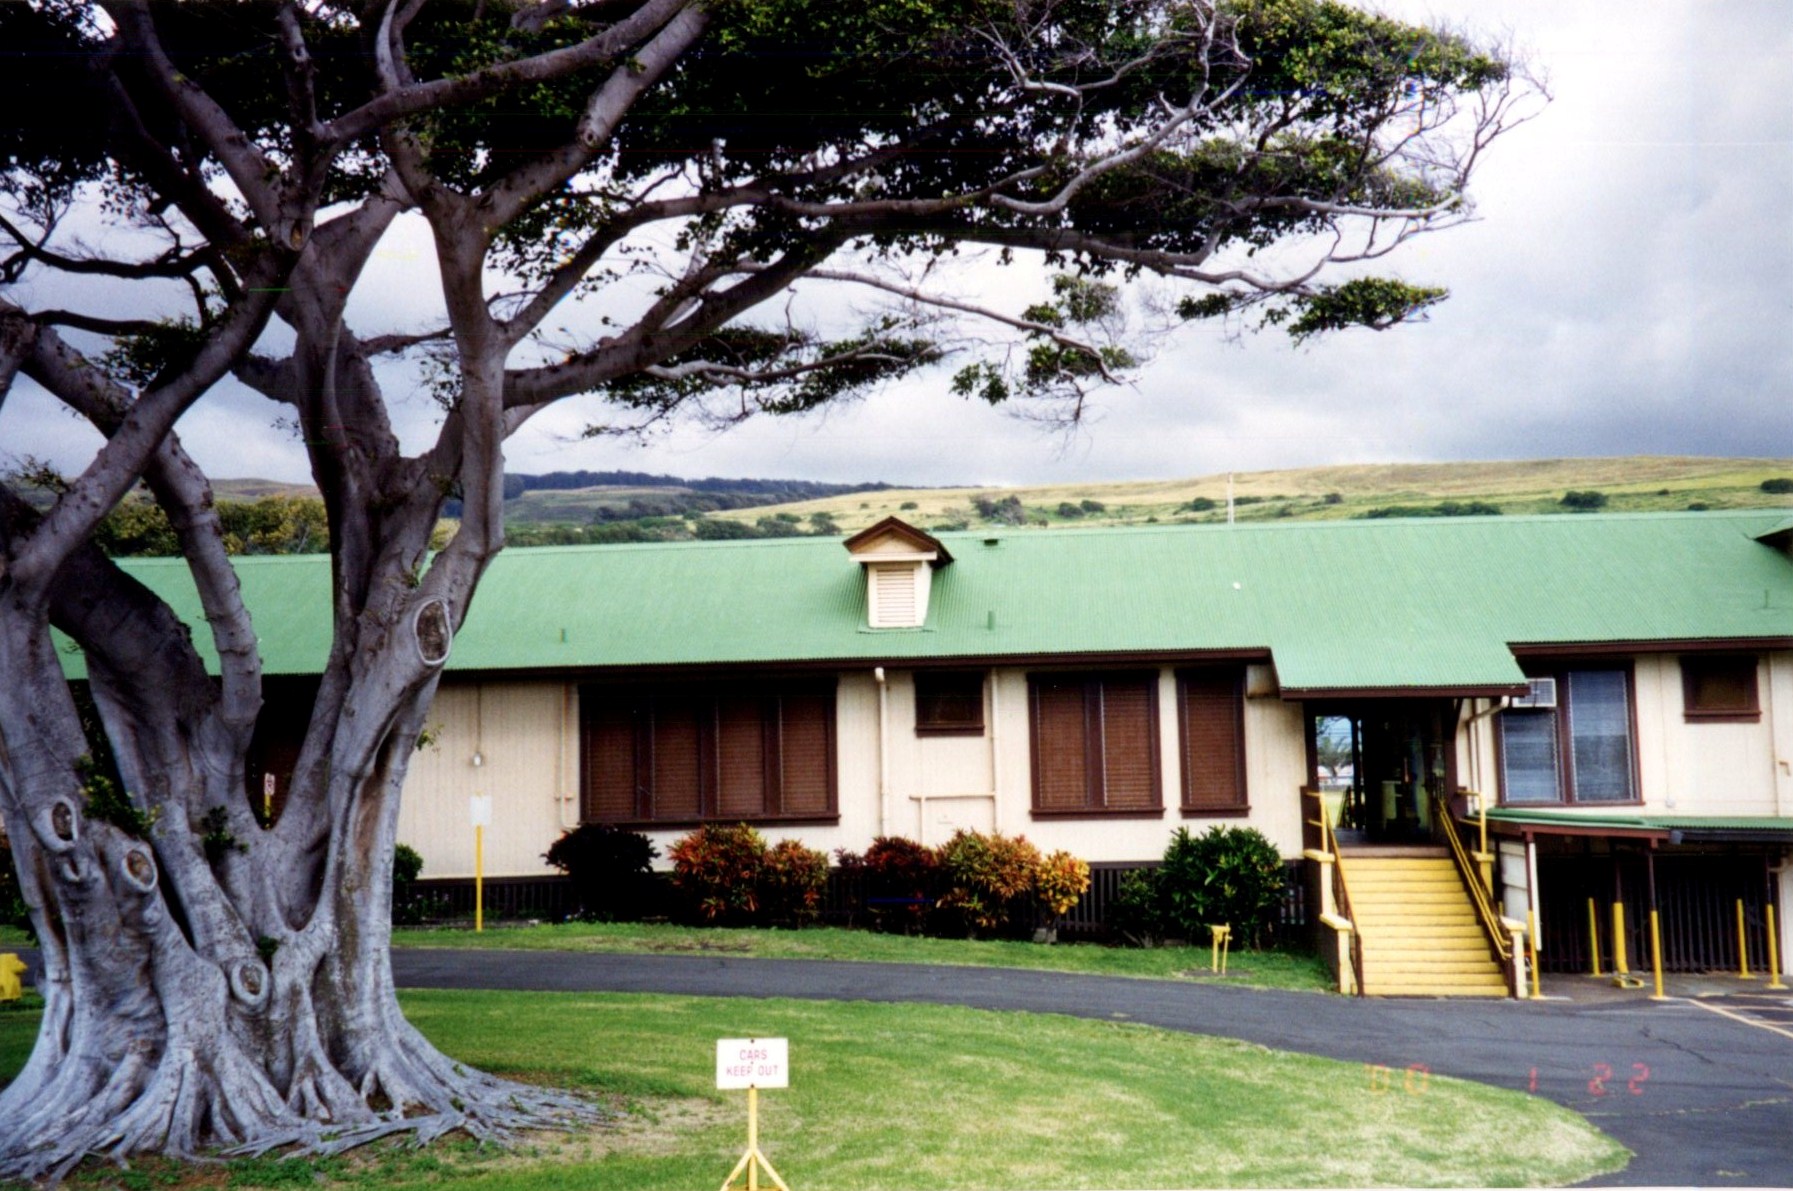 Naalehu Elementary School – Historic Hawaii Foundation